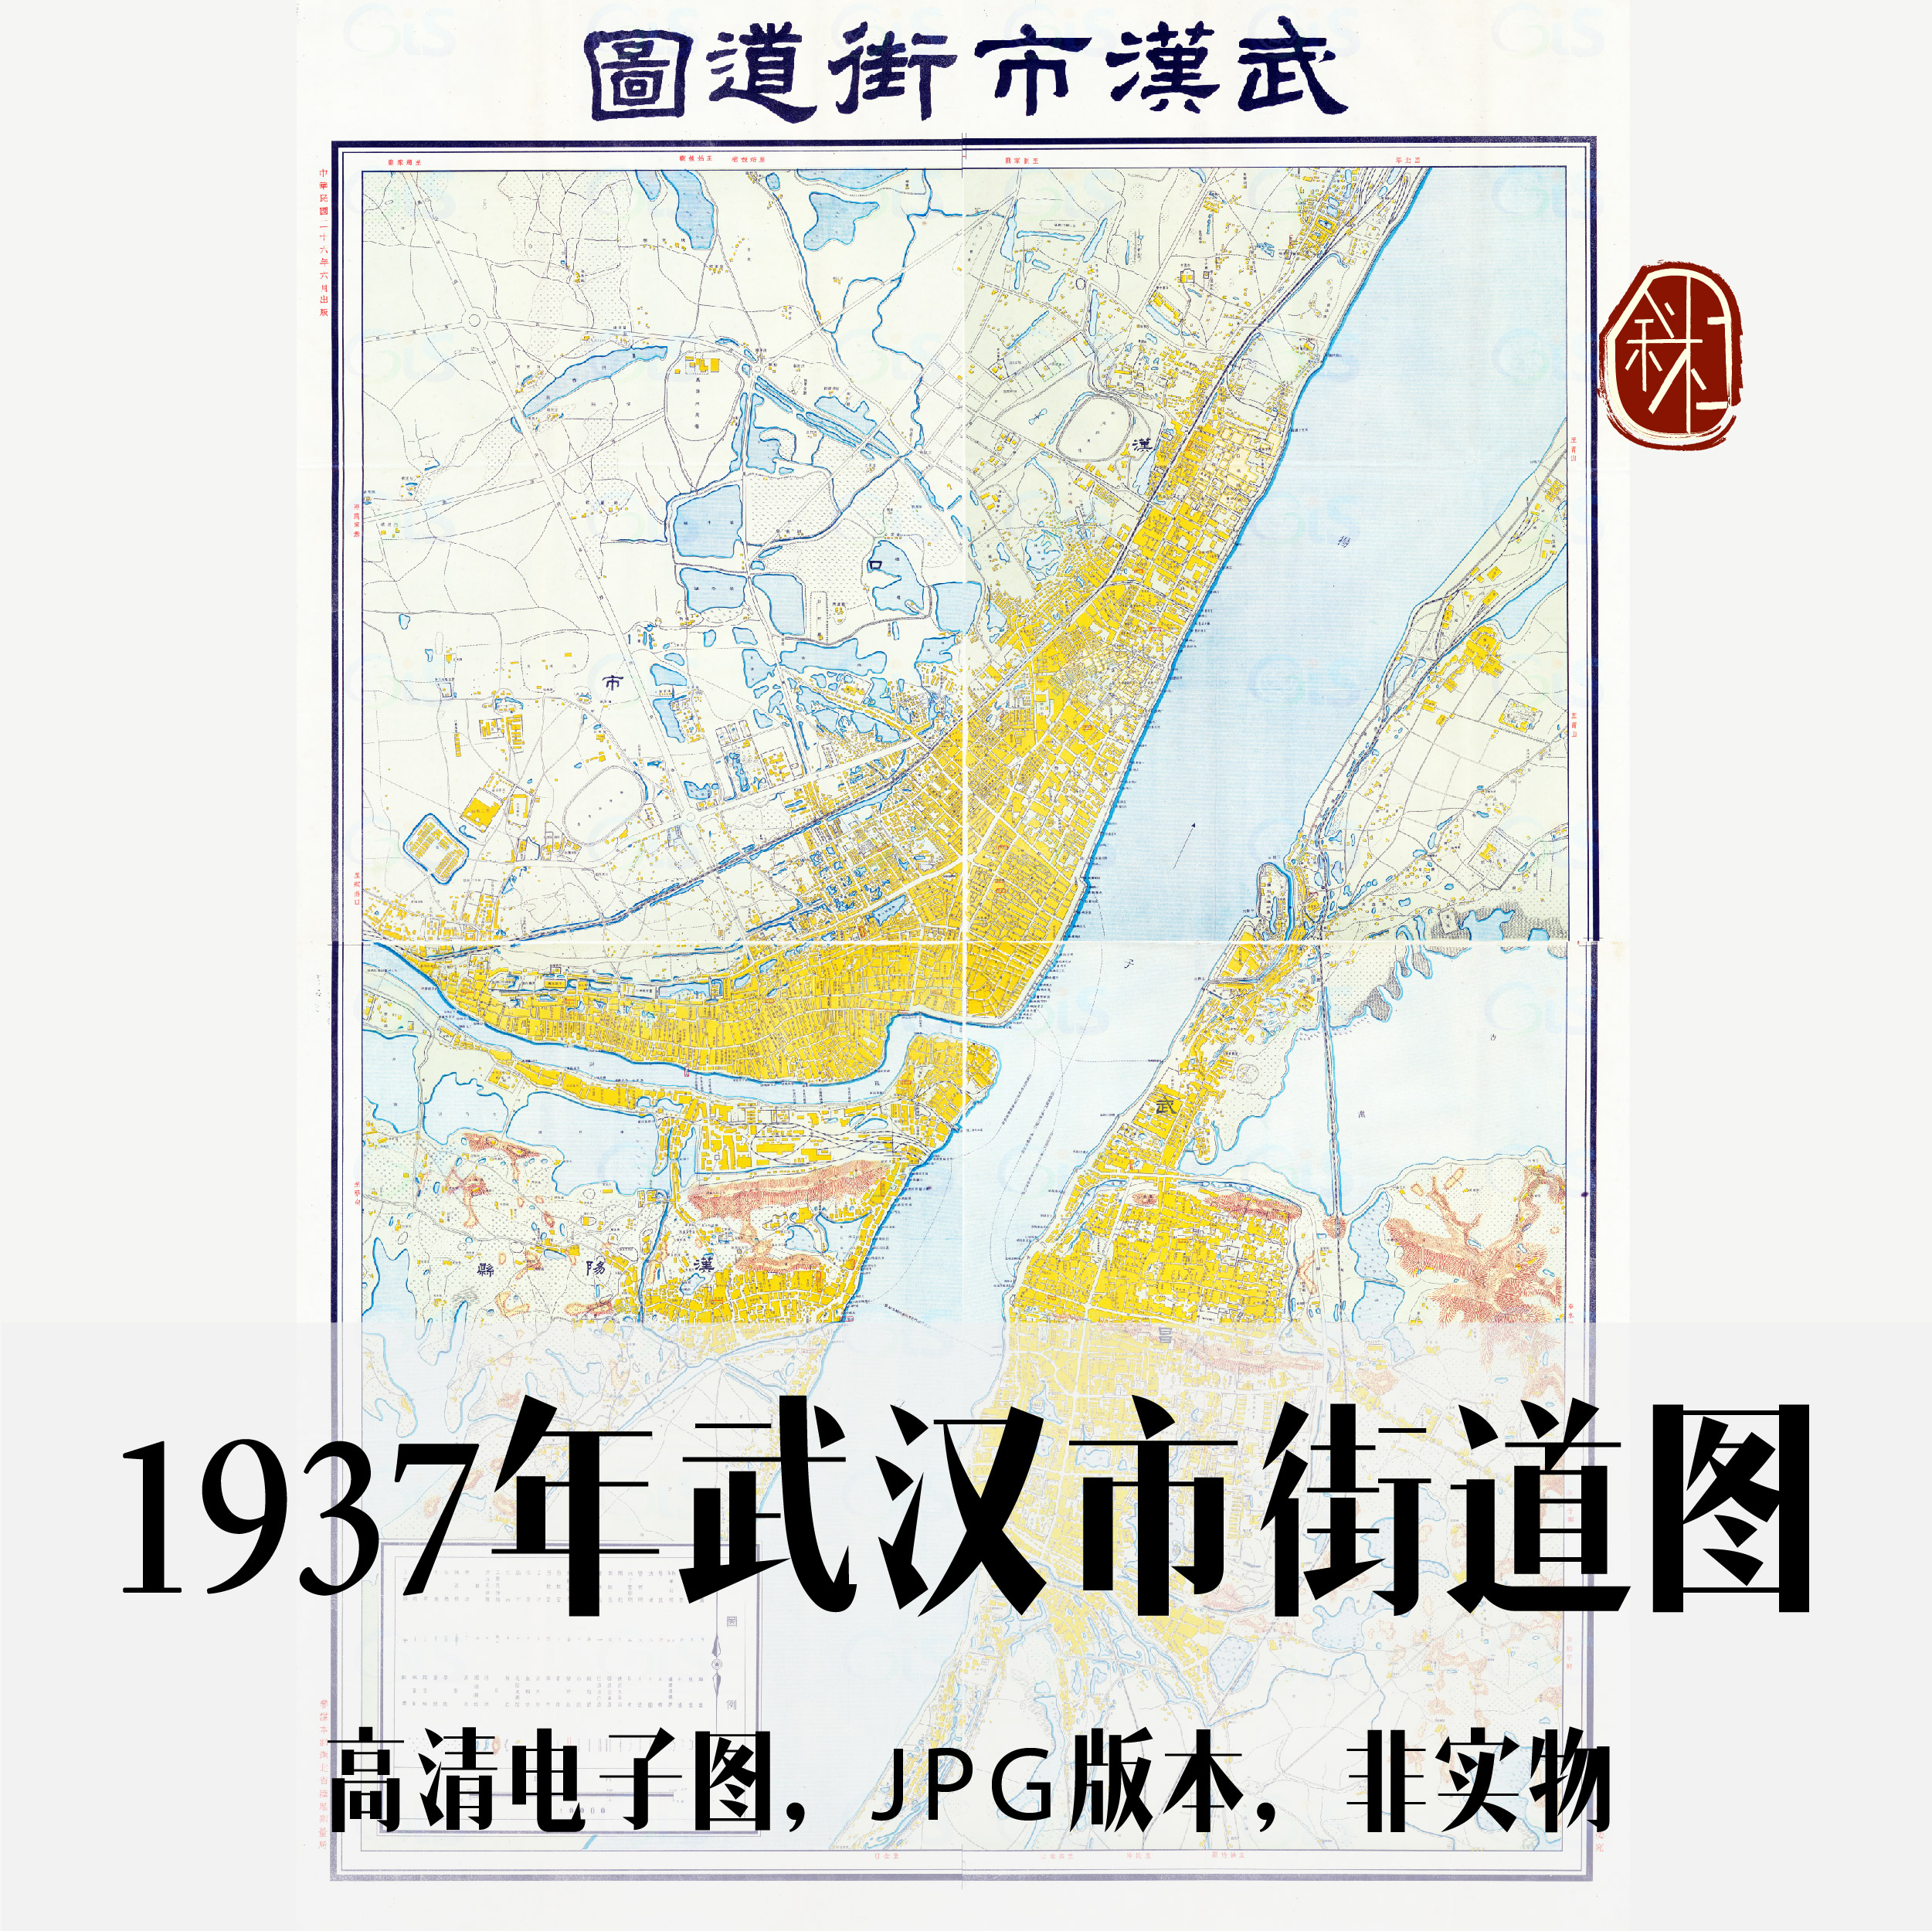 1937年武汉市街道图电子手绘老地图历史地理资料道具素材-封面